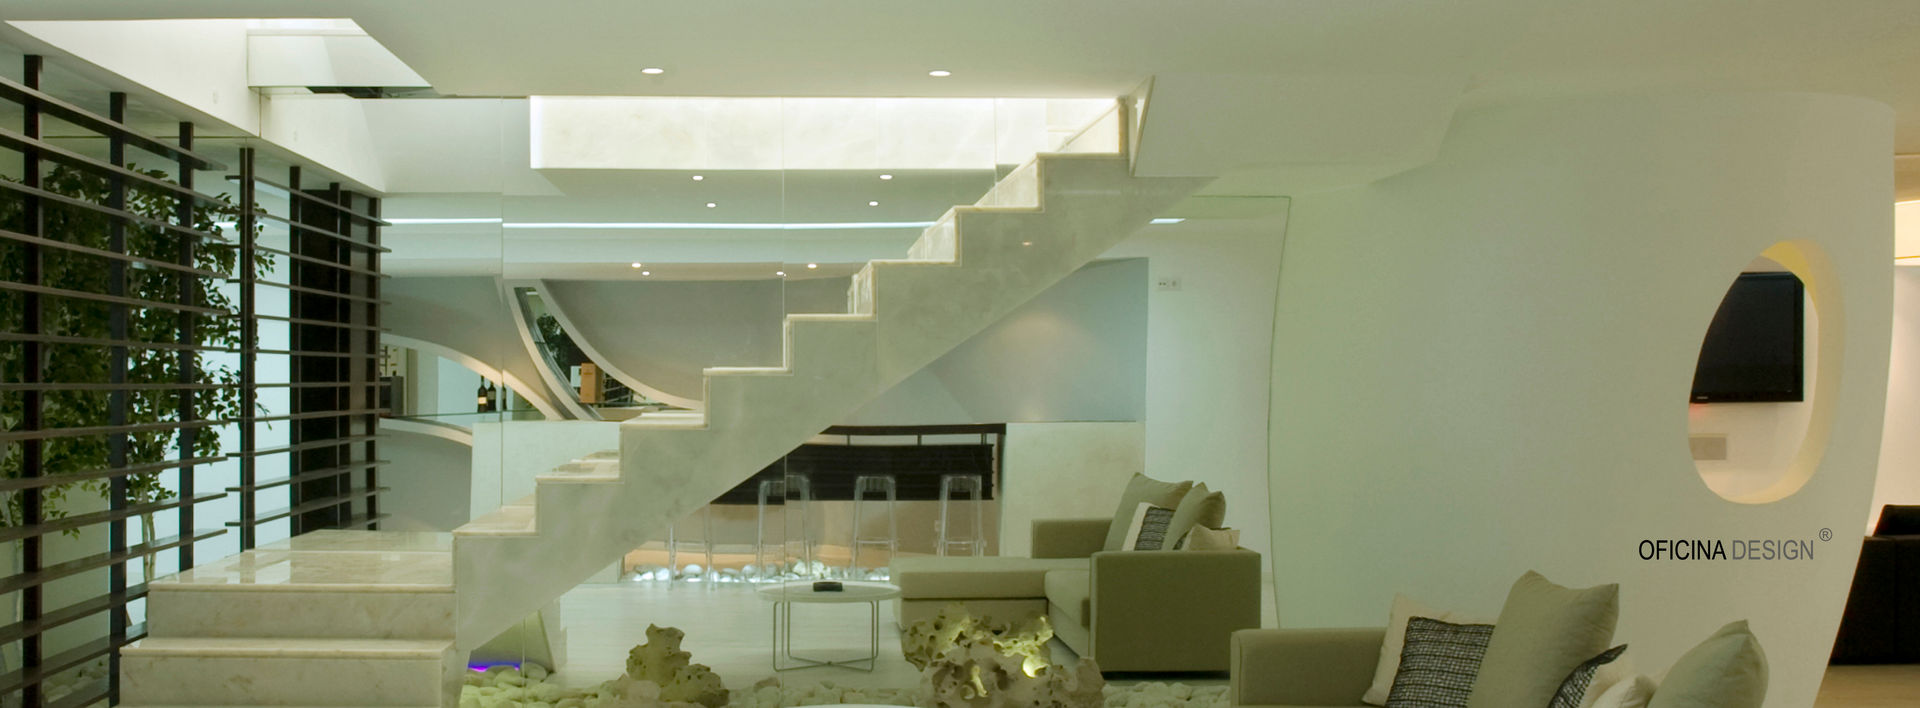 Casa - Freedom, Oficina Design Oficina Design Ingresso, Corridoio & Scale in stile minimalista